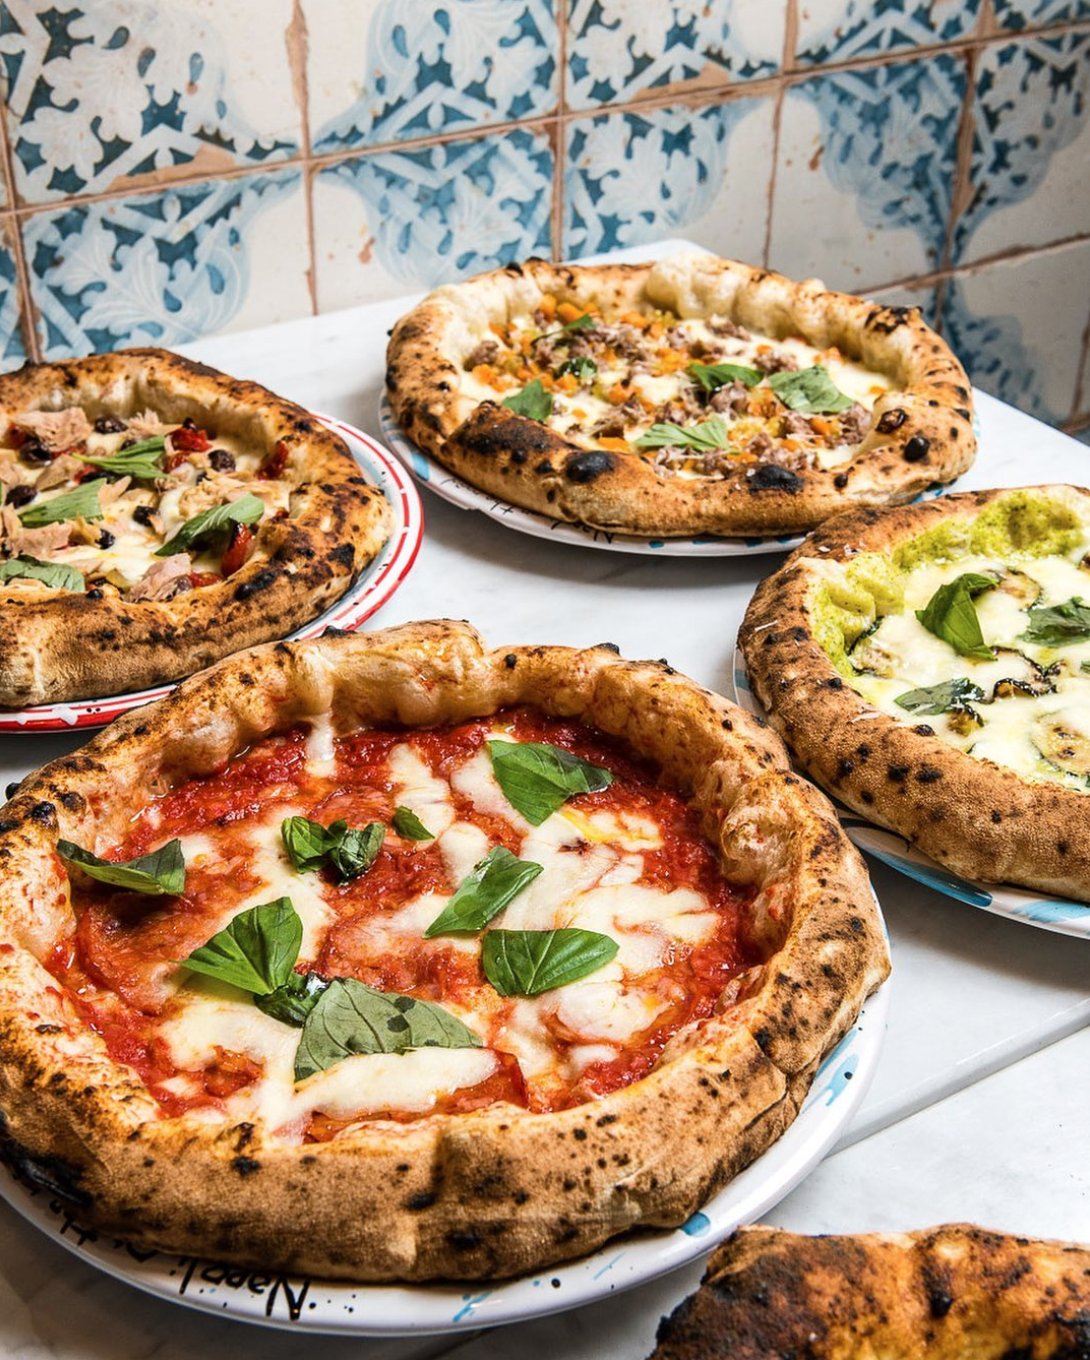 La pizza napolitana, de masa más gruesa y hecha en horno de leña, según los entendidos, es la mejor (Instagram)